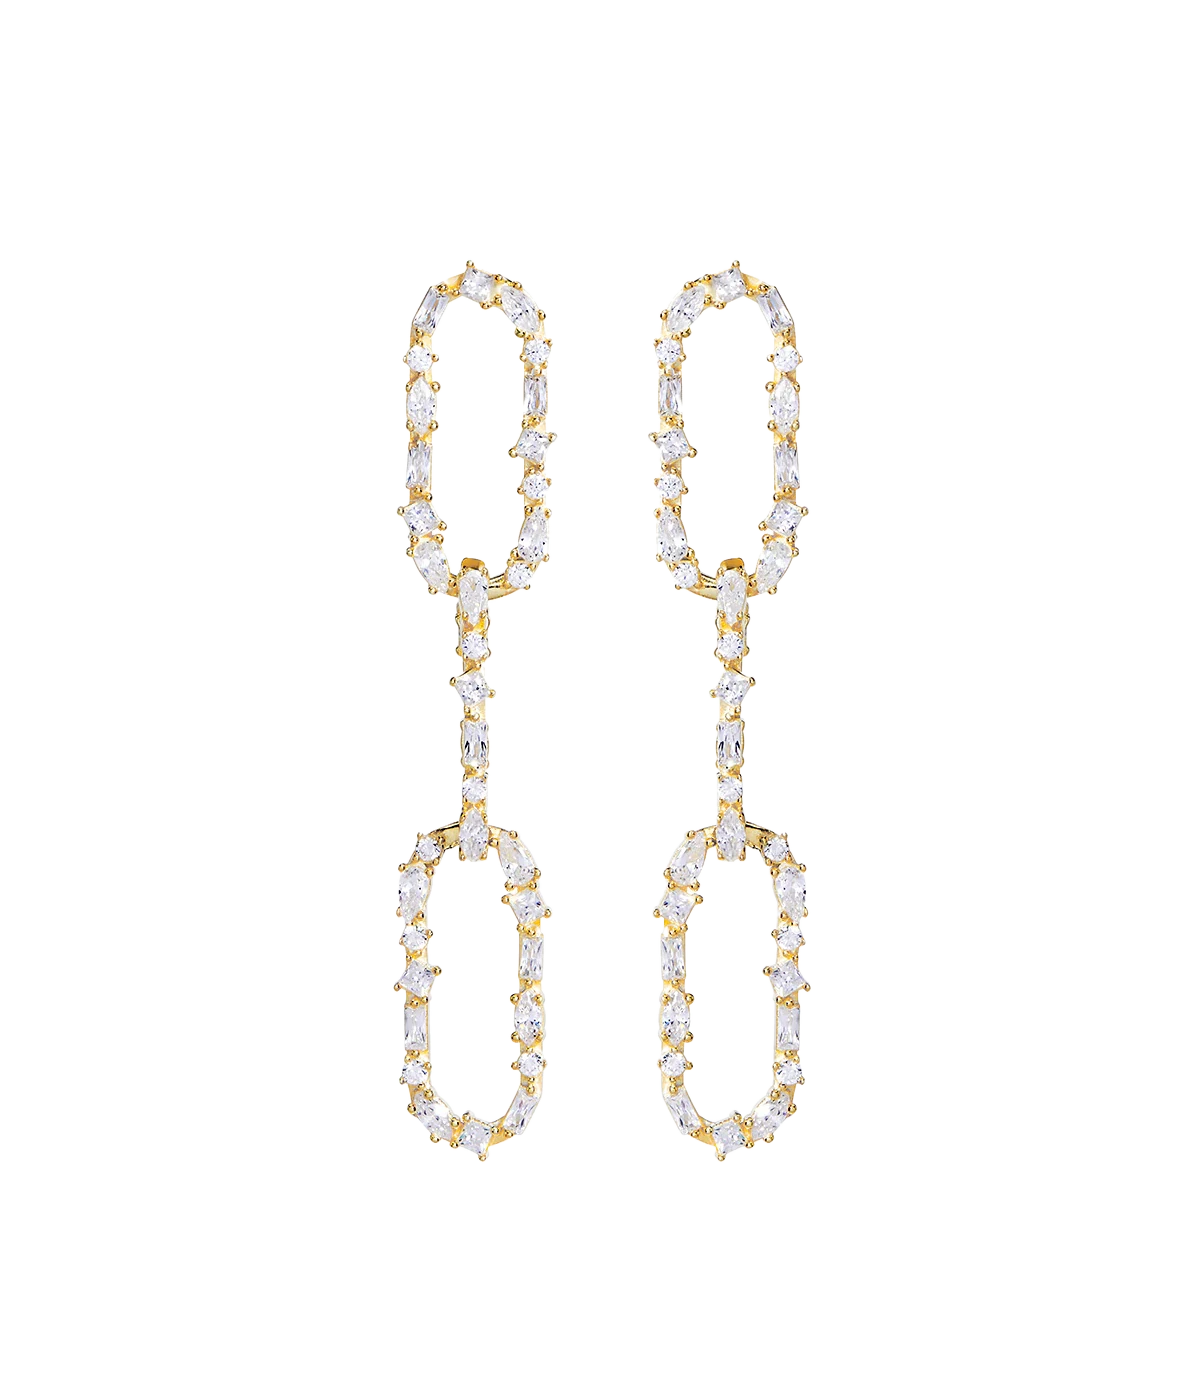 Queen Link Earrings in Gold